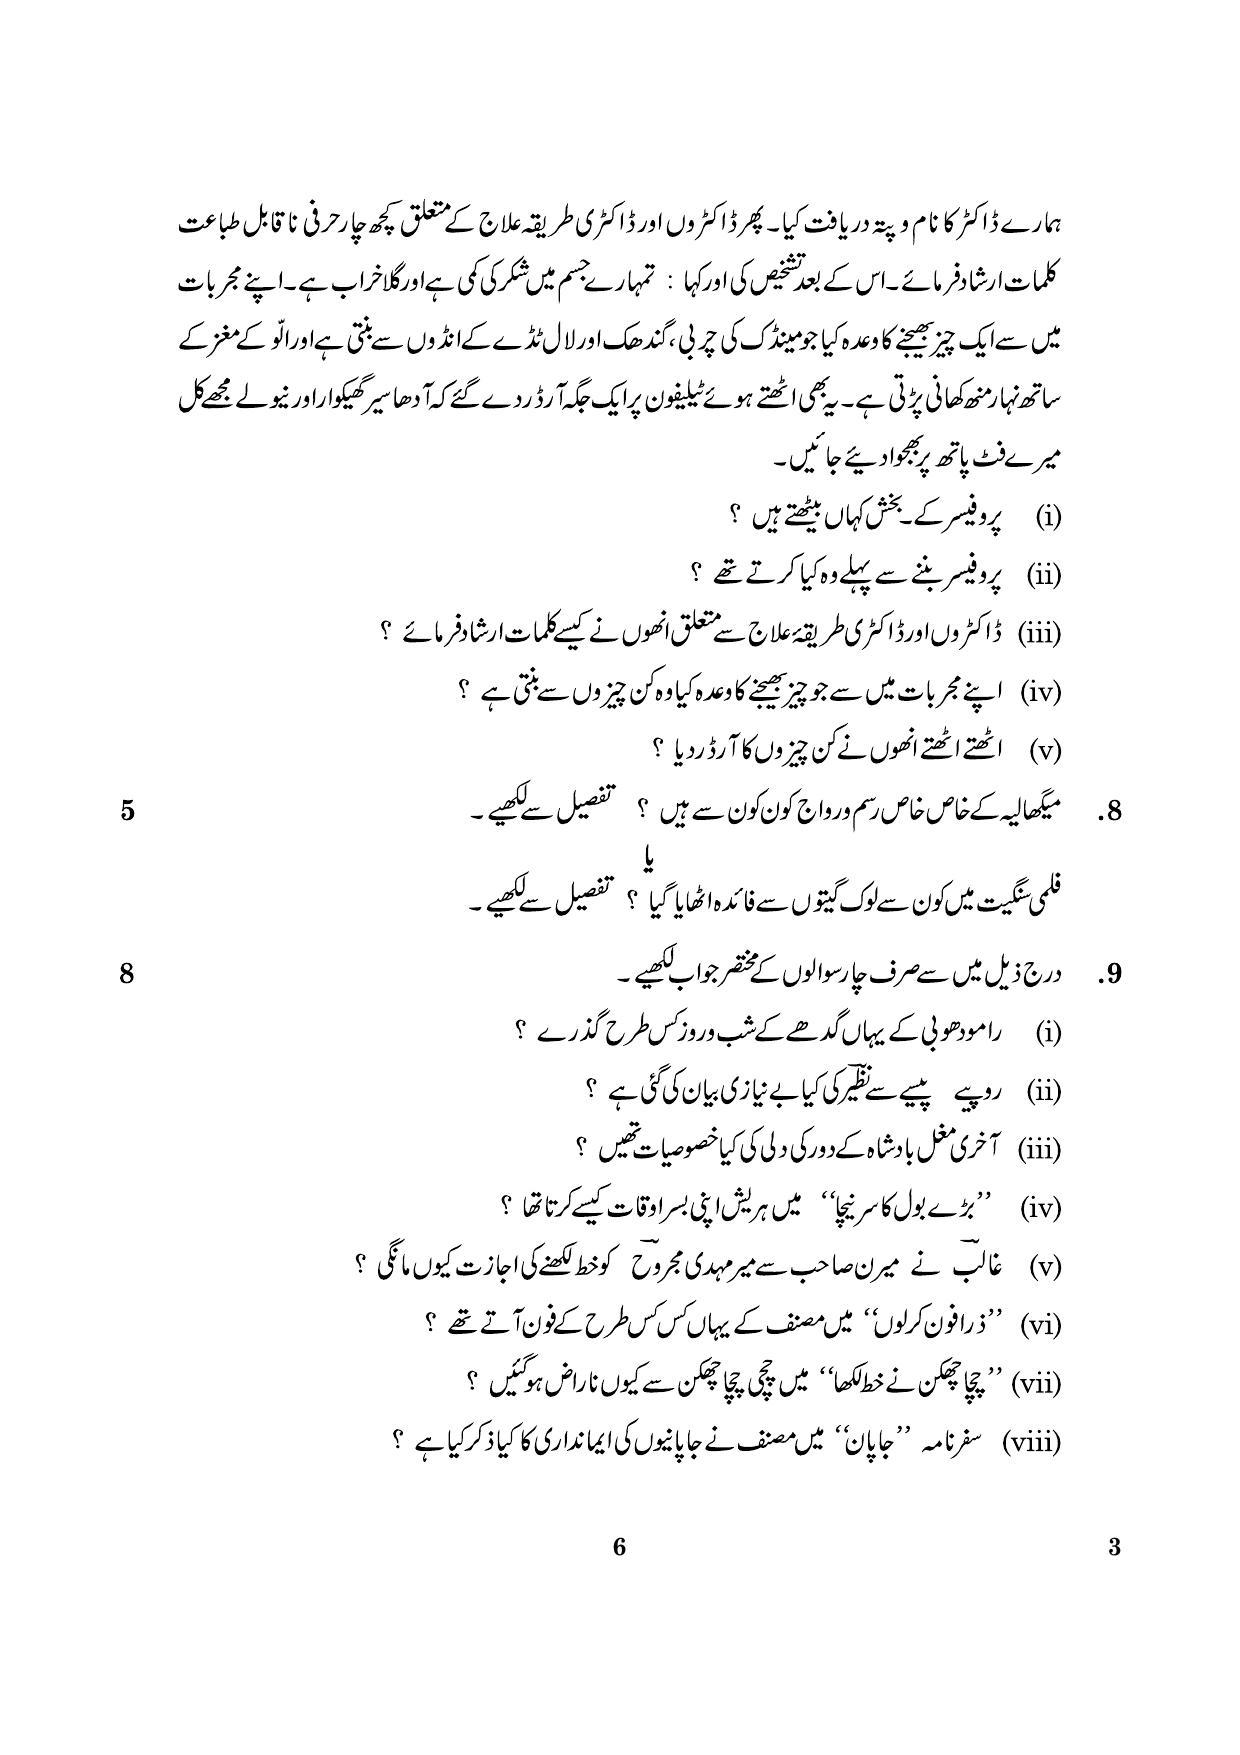 CBSE Class 12 003 Urdu Core 2016 Question Paper - Page 6